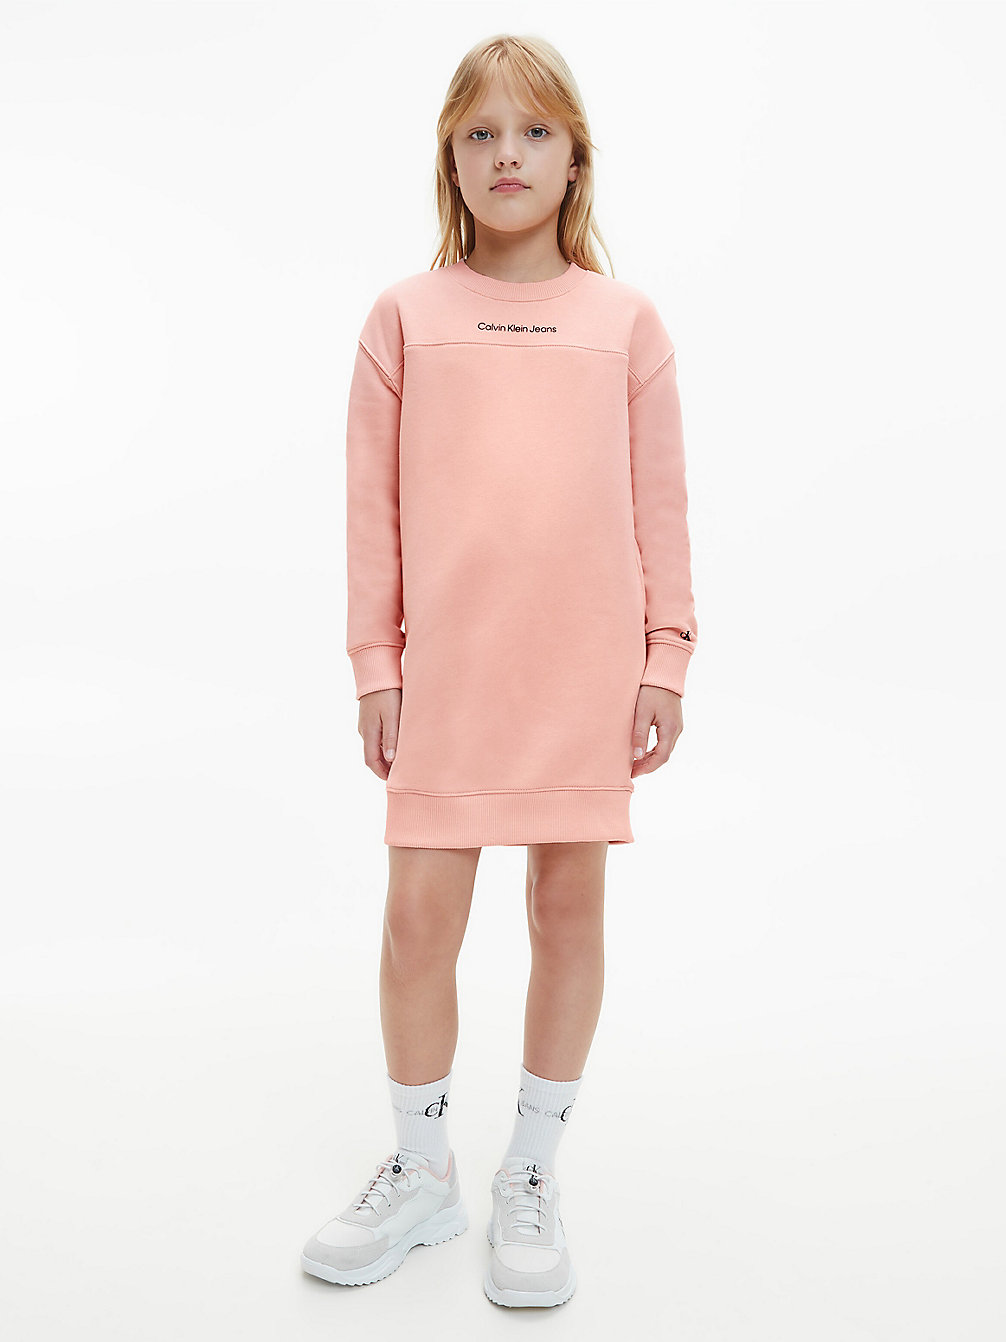 PINK BLUSH Sweatshirtjurk undefined girls Calvin Klein